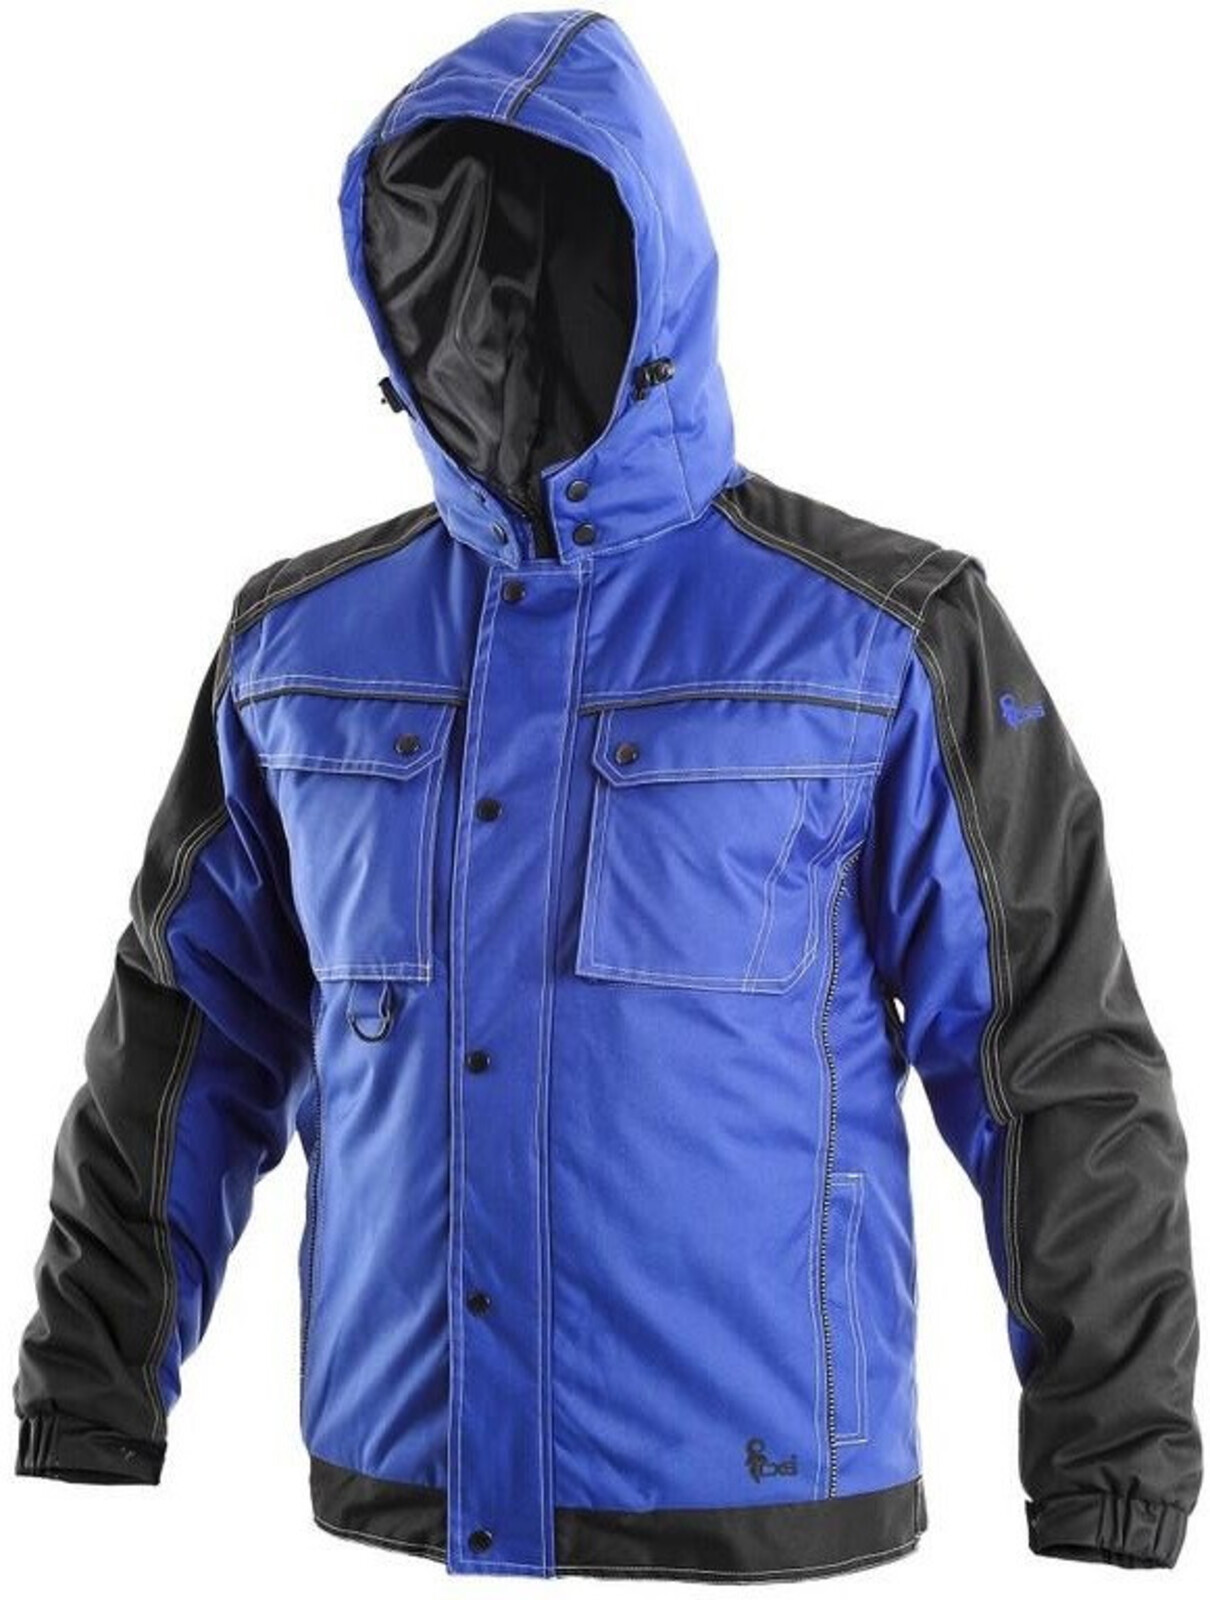 Pánska zimná bunda CXS Irvine 2v1 - veľkosť: L, farba: modrá/čierna